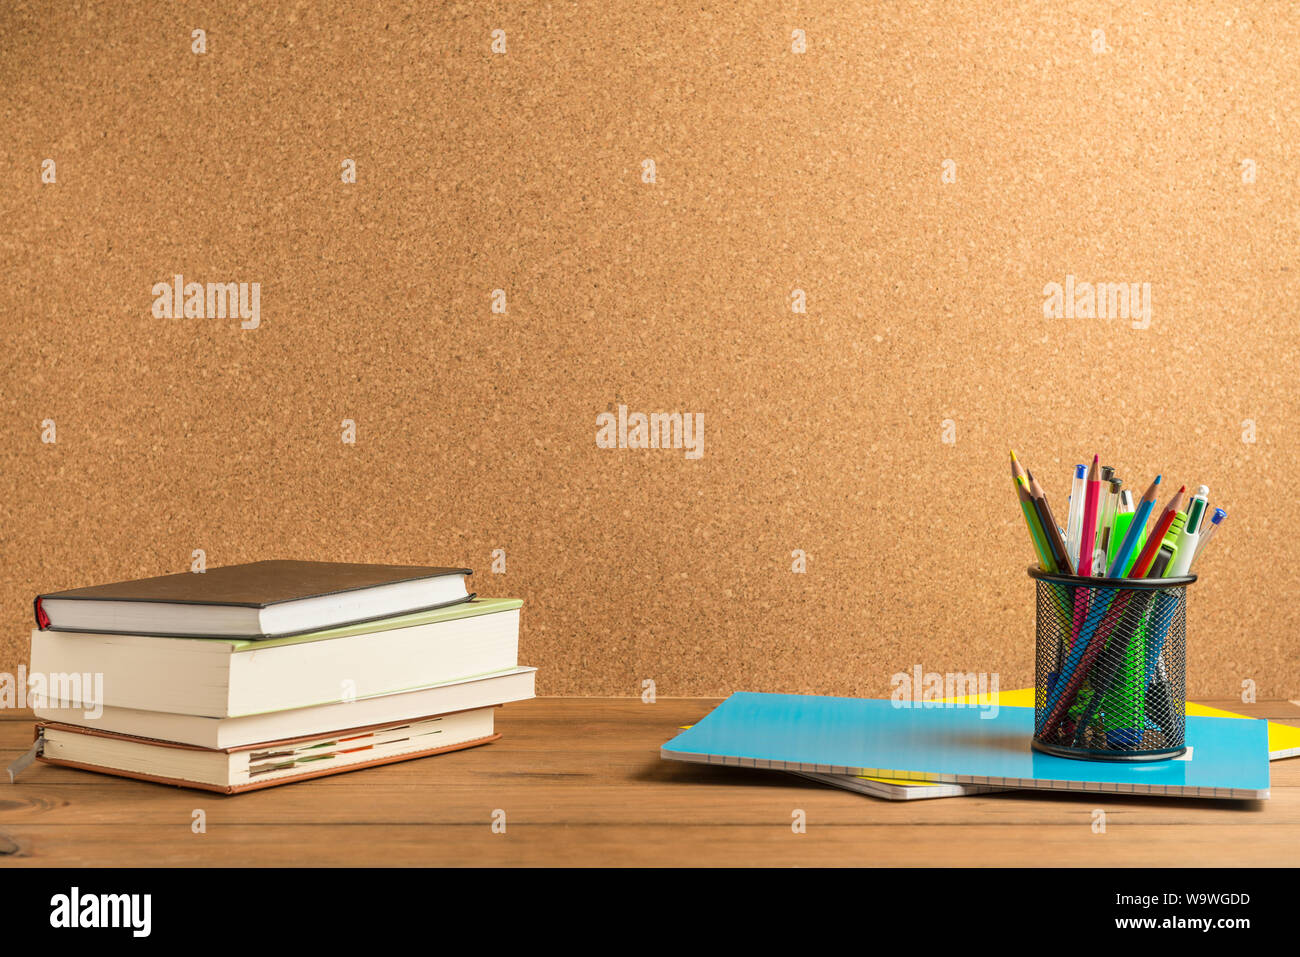 Livres, cahiers et un porte-crayons avec les crayons, stylos et fournitures scolaires diverses sur certains panneaux en bois avec un panneau de liège à l'arrière-plan. Banque D'Images